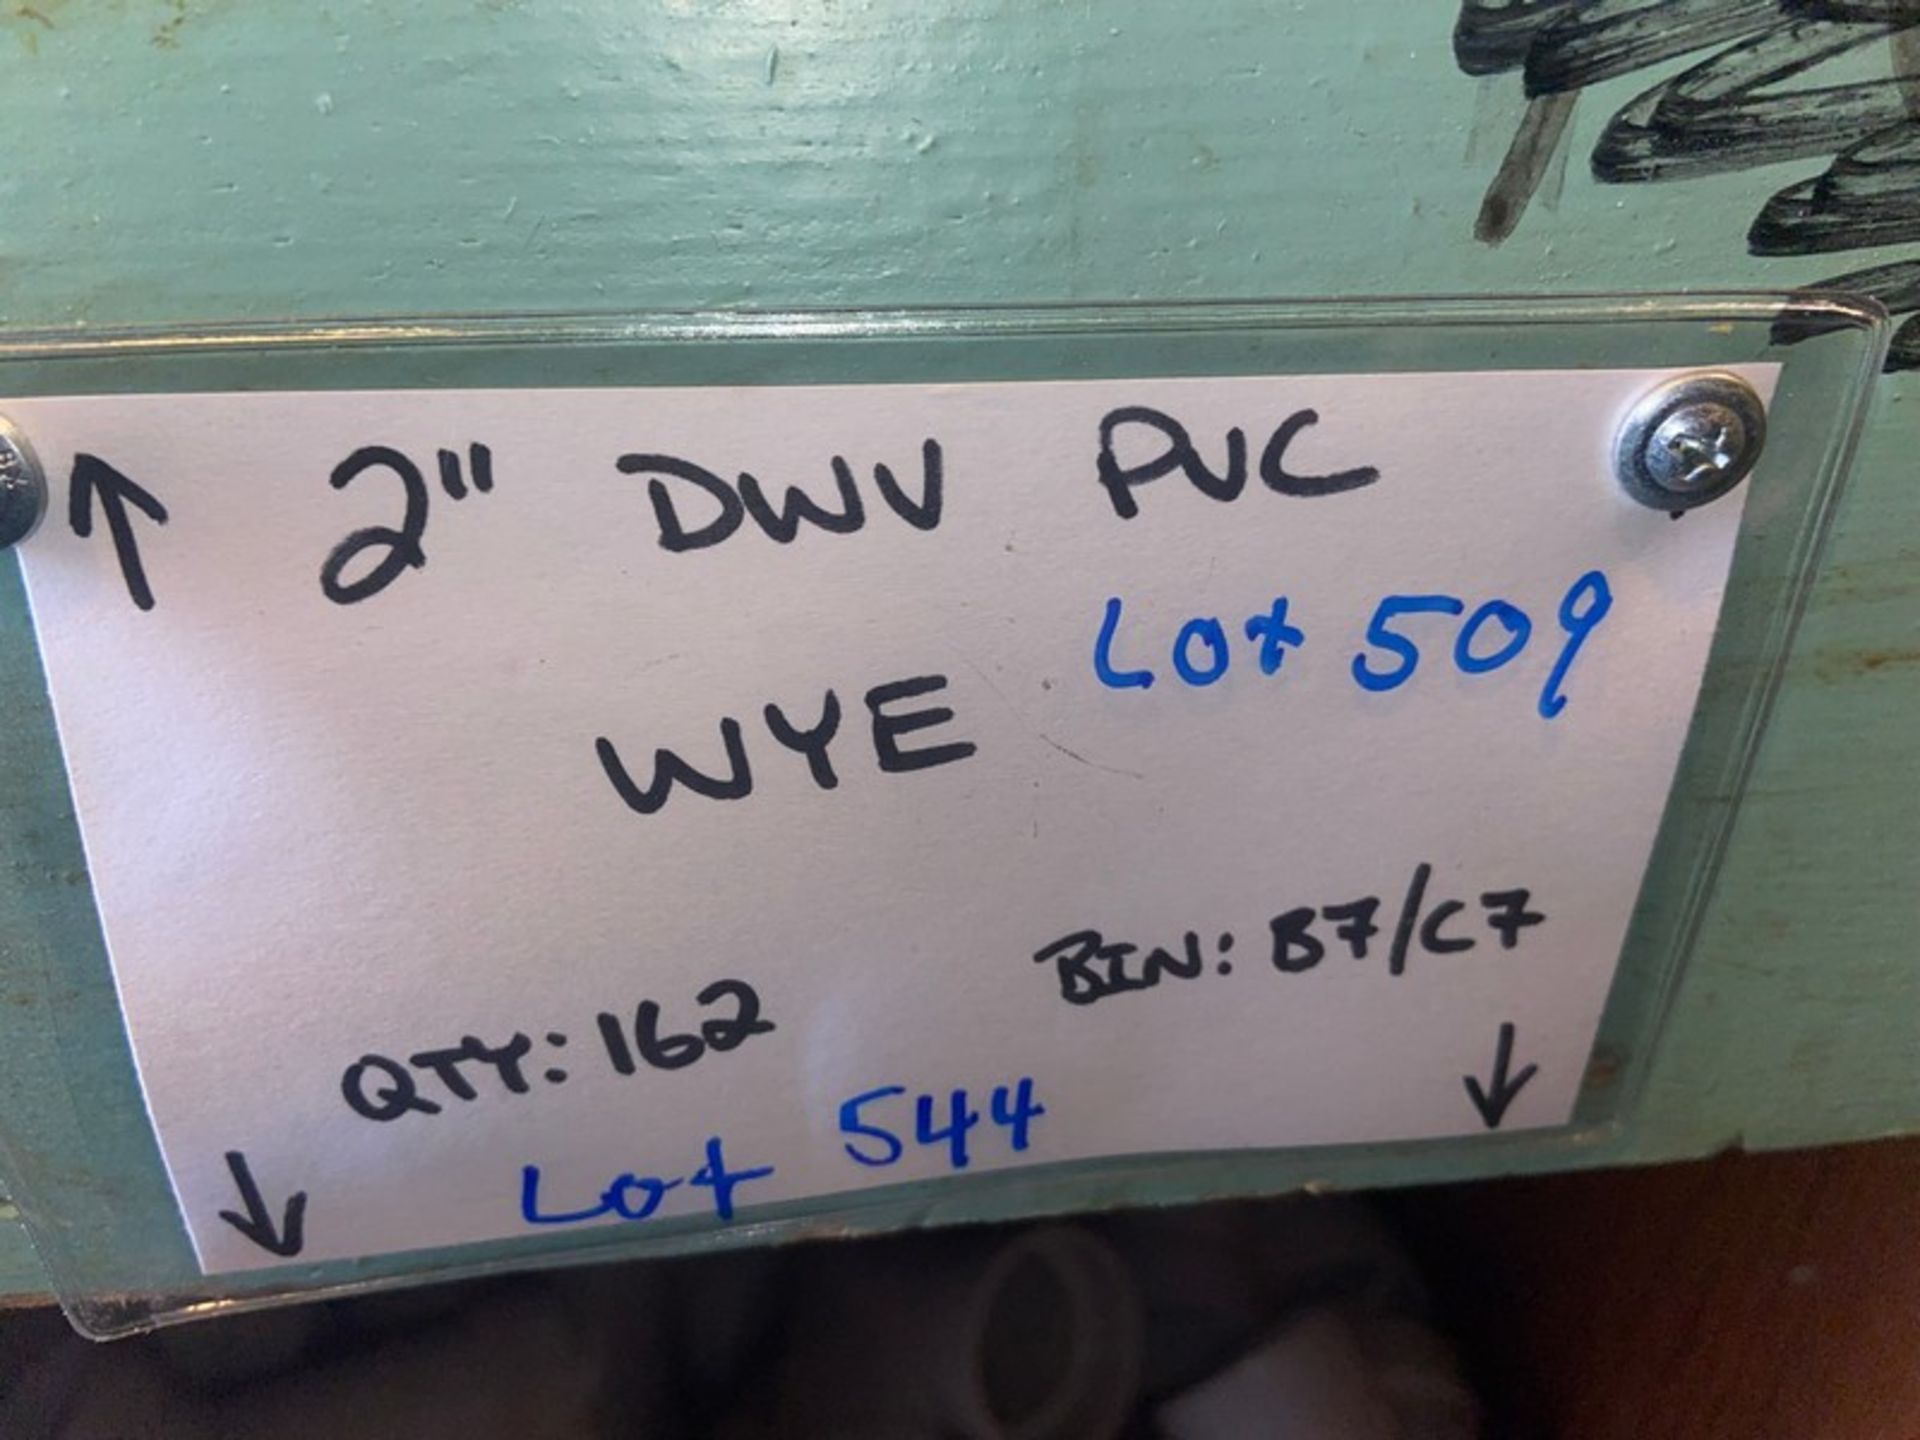 (162) 2” DWV PVC WYE (Bin:B7/C7) (Trailer #5) (LOCATED IN MONROEVILLE, PA) - Bild 3 aus 10